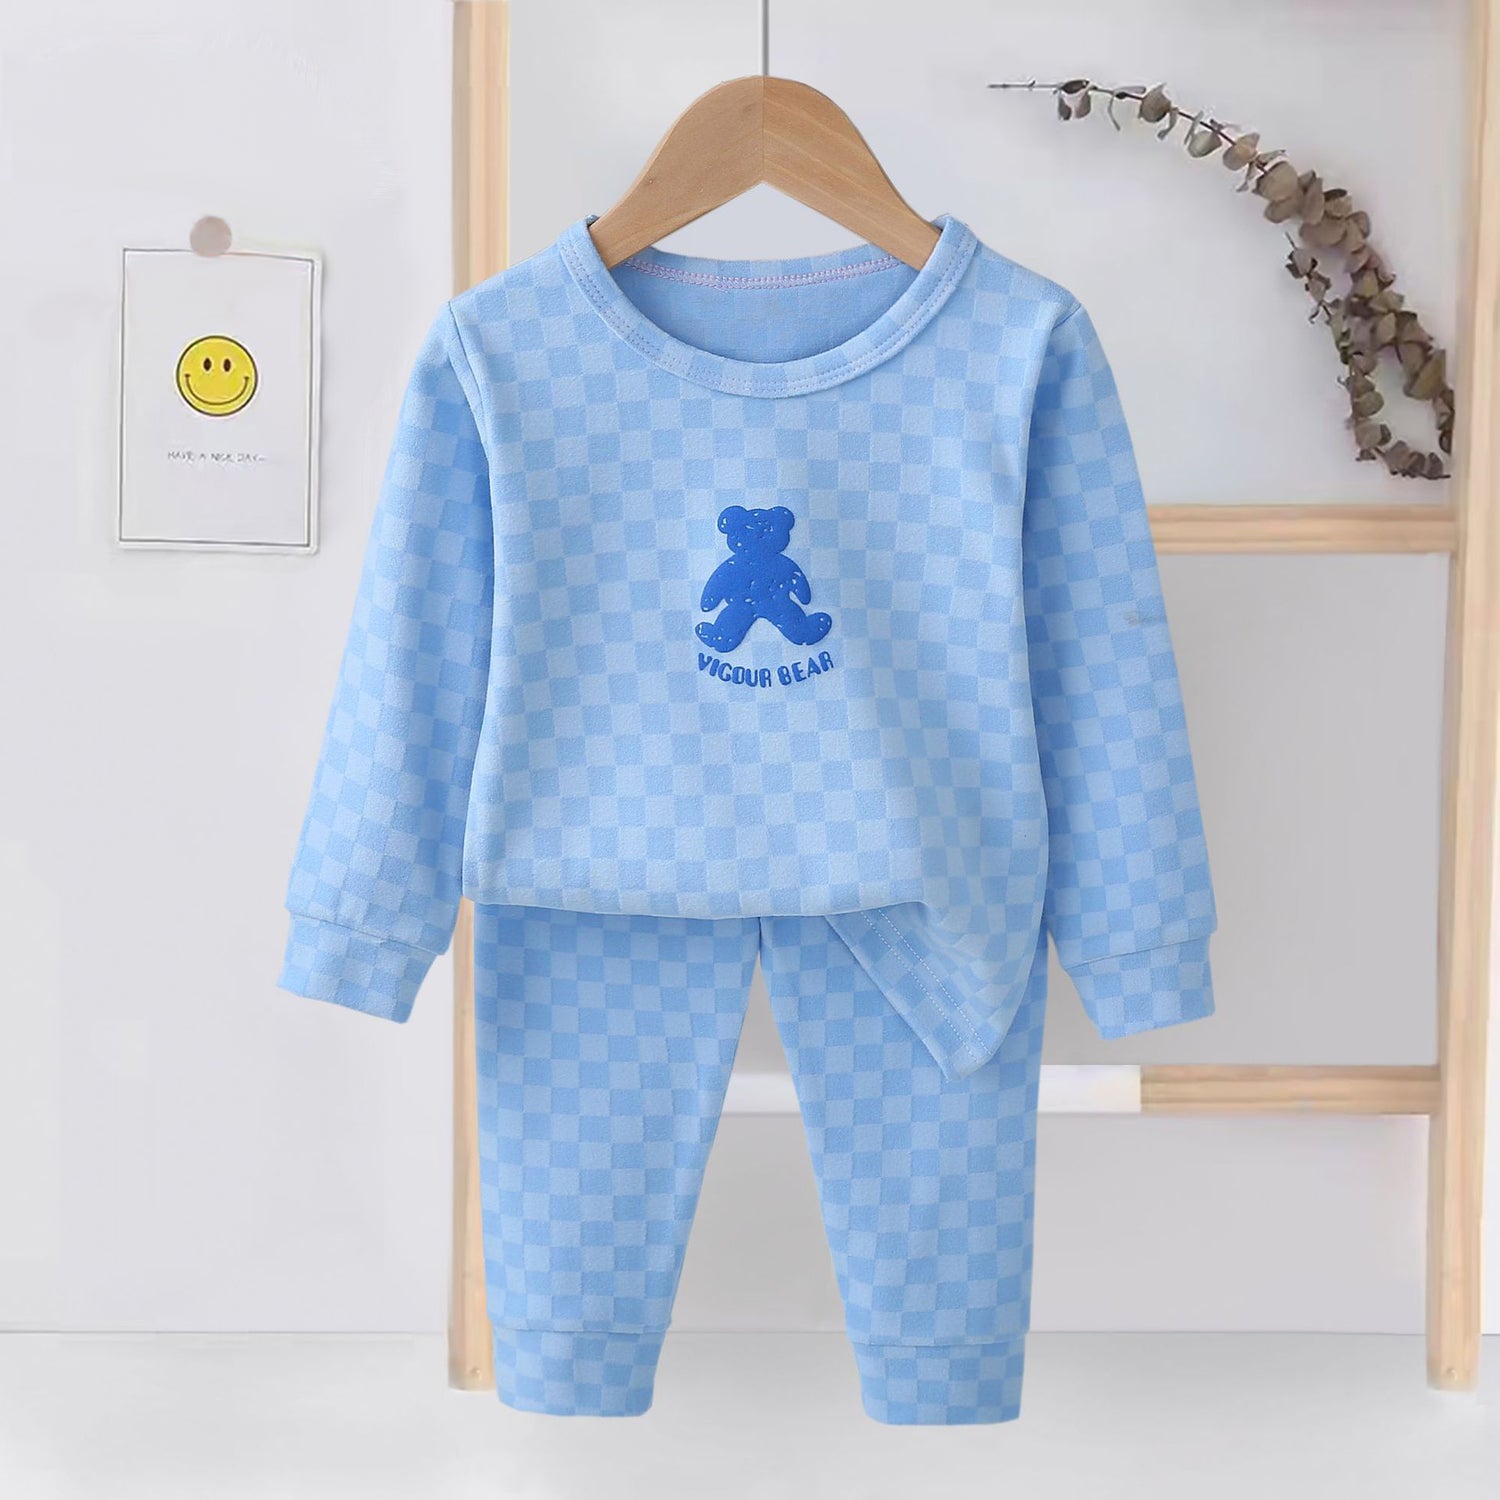 [225831-LIGHTBLUE] - Setelan Baju Tidur Piyama Import Anak Cowok Cewek - Motif Chess Bear